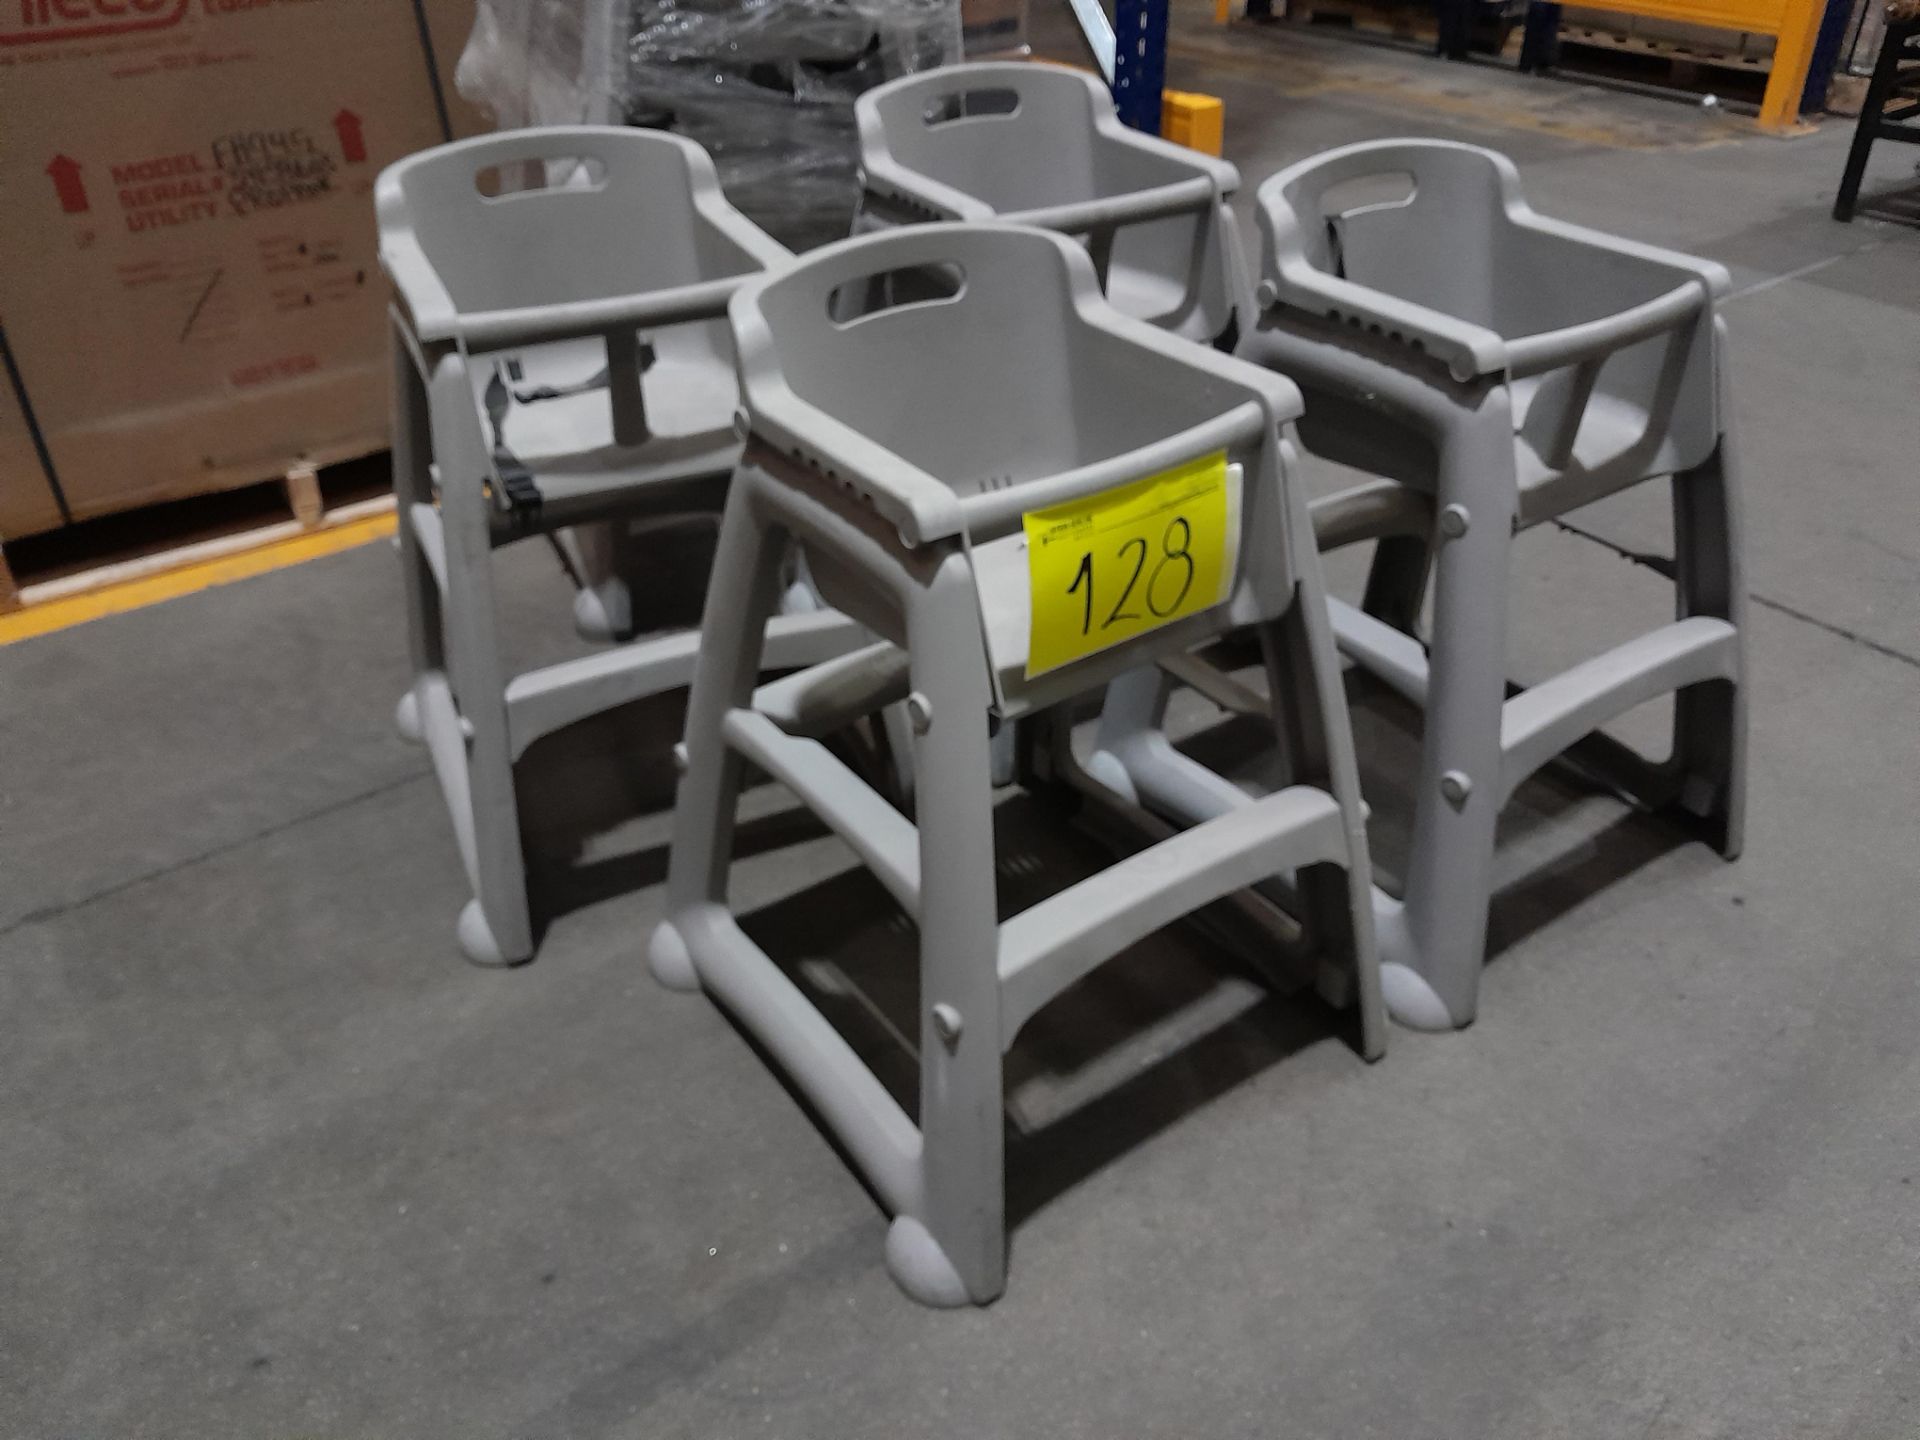 Lote de 7 sillas periqueras para niño, color gris (Equipo usado) - Image 2 of 4